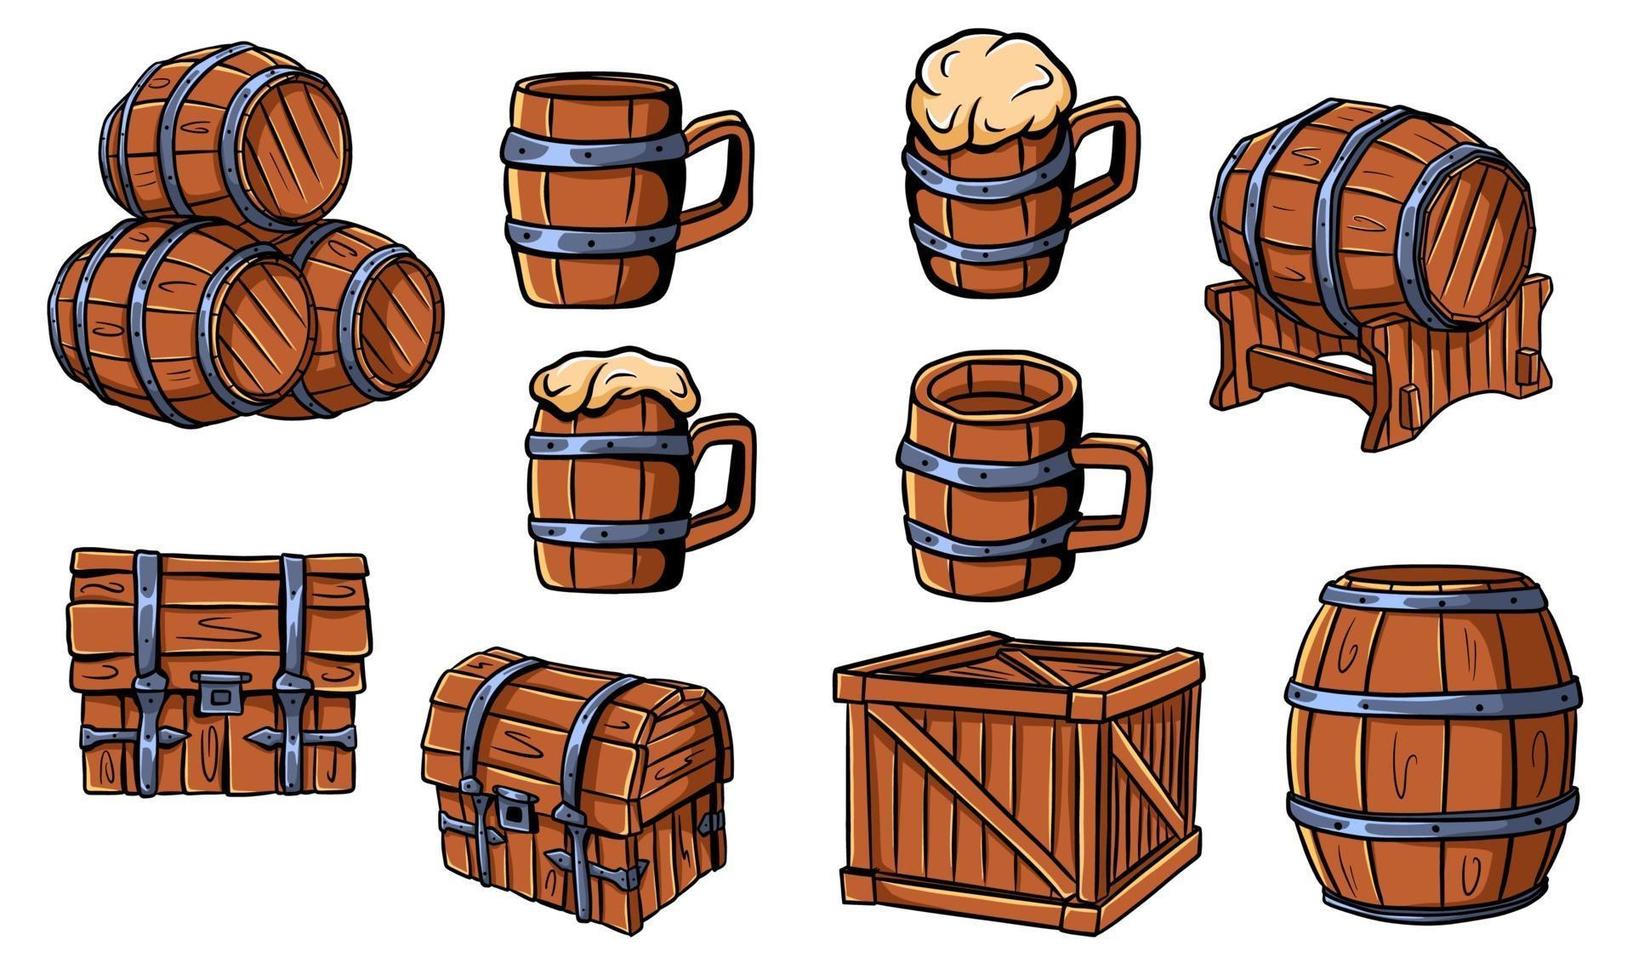 barris de madeira, baús, canecas de cerveja ou cerveja. artesanato em madeira. caixa. barris de vinho. ilustração do vetor isolada.